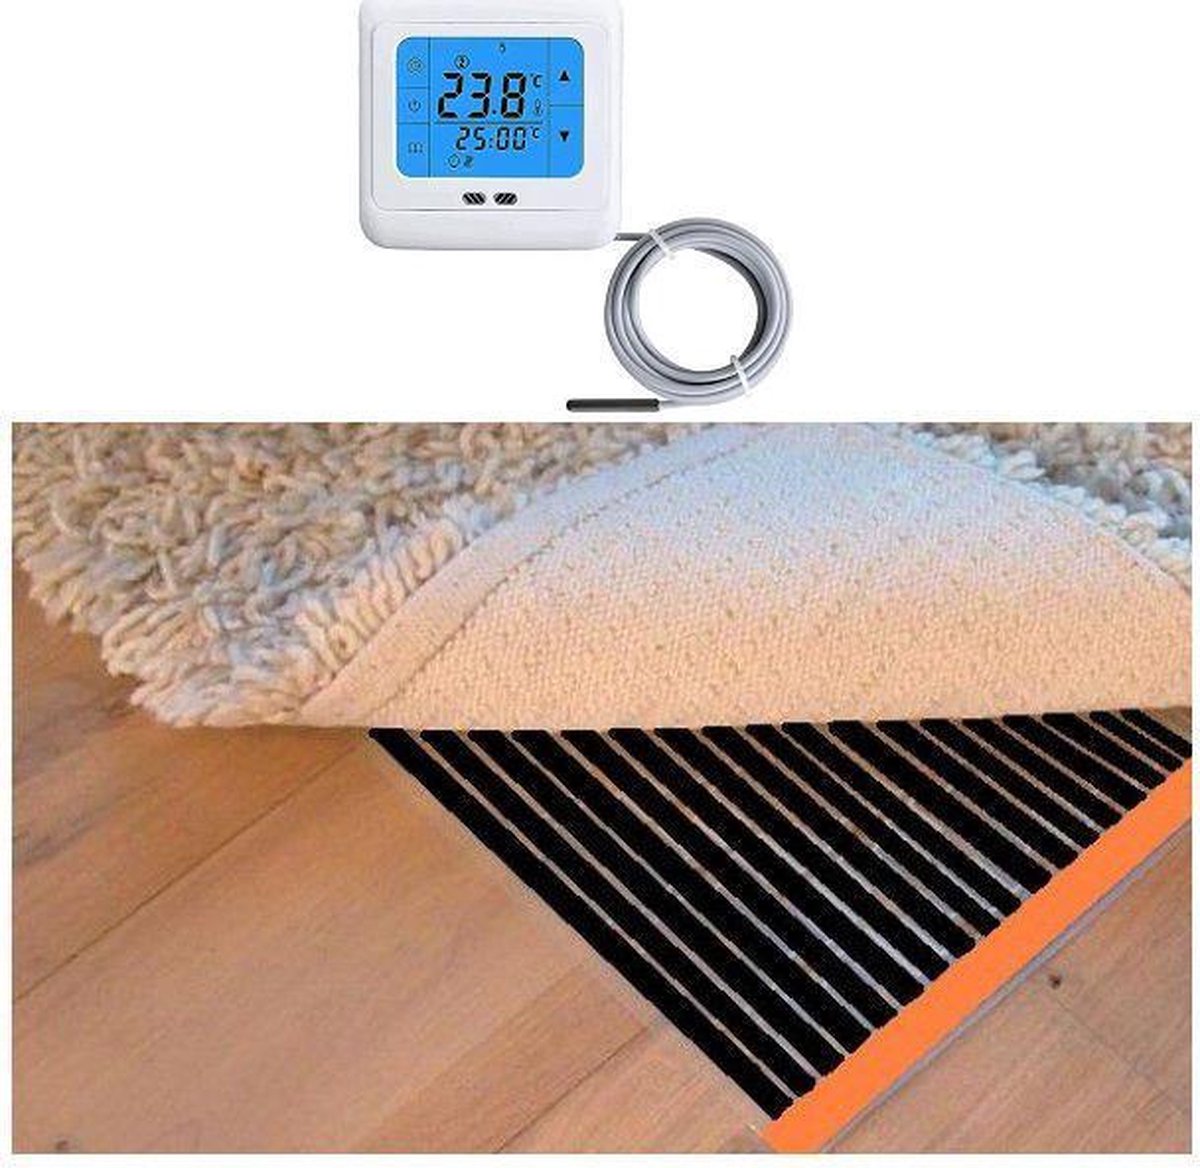 Woonkamer verwarmingsfolie infrarood folie voor vloerbedekking, tapijten vloerkleden elektrisch met TH 89 thermostaat 75 cm x 750 cm 900 Watt